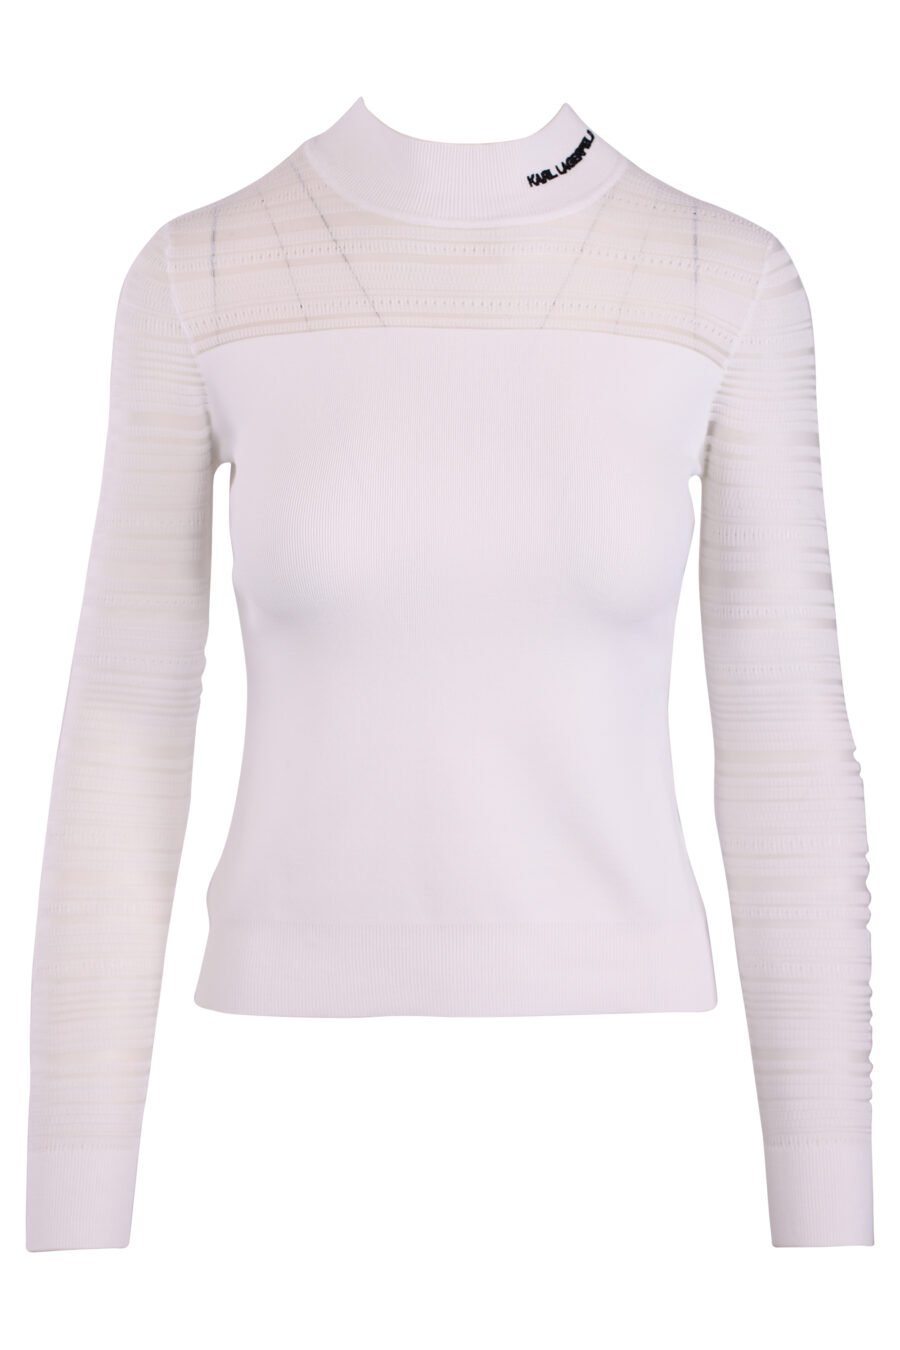 T-shirt branca de manga comprida semitransparente - IMG 3261